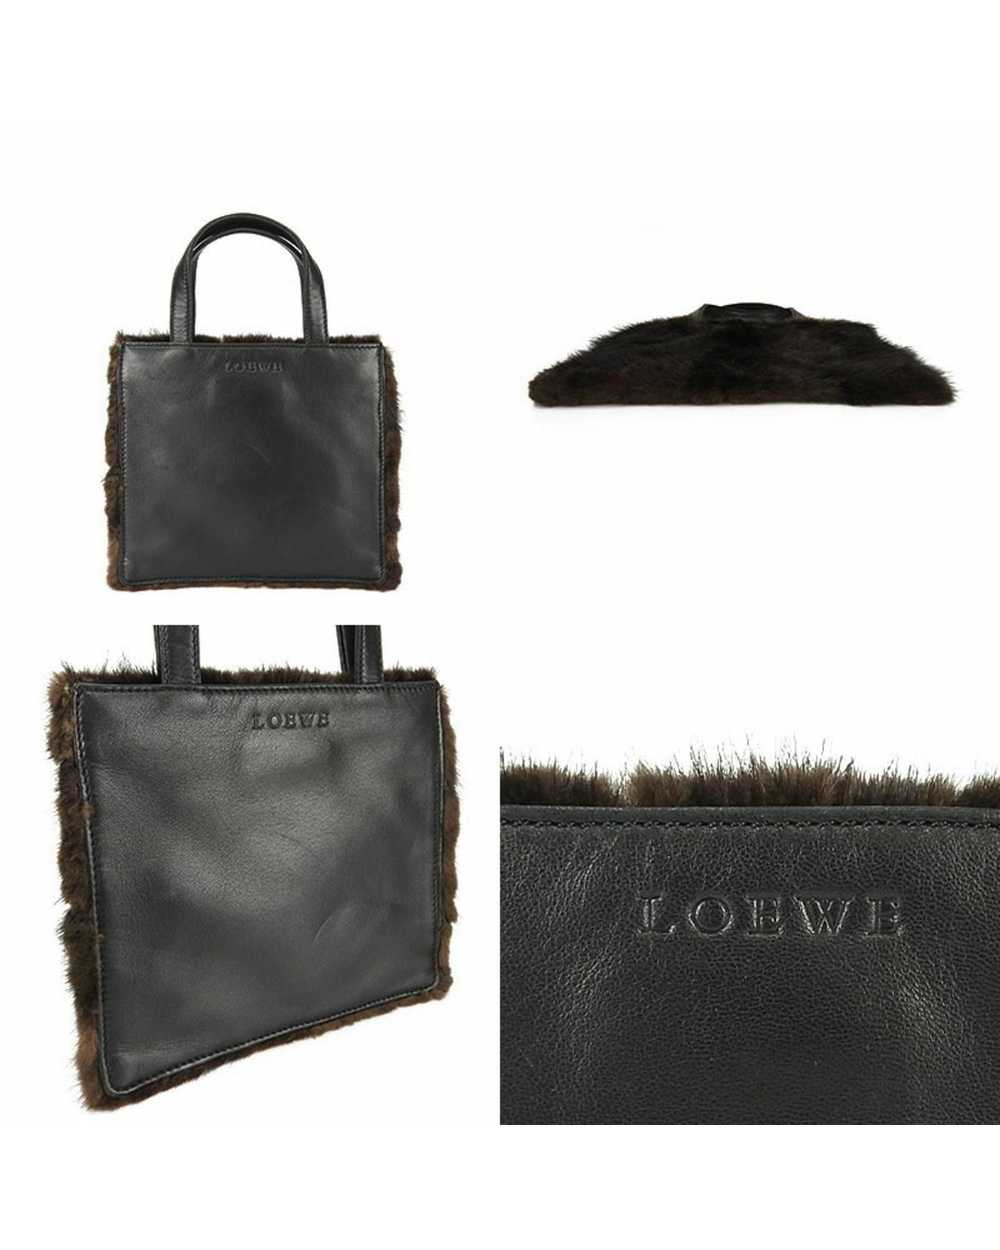 Loewe Mink Fur Nappa Leather Handbag - image 3